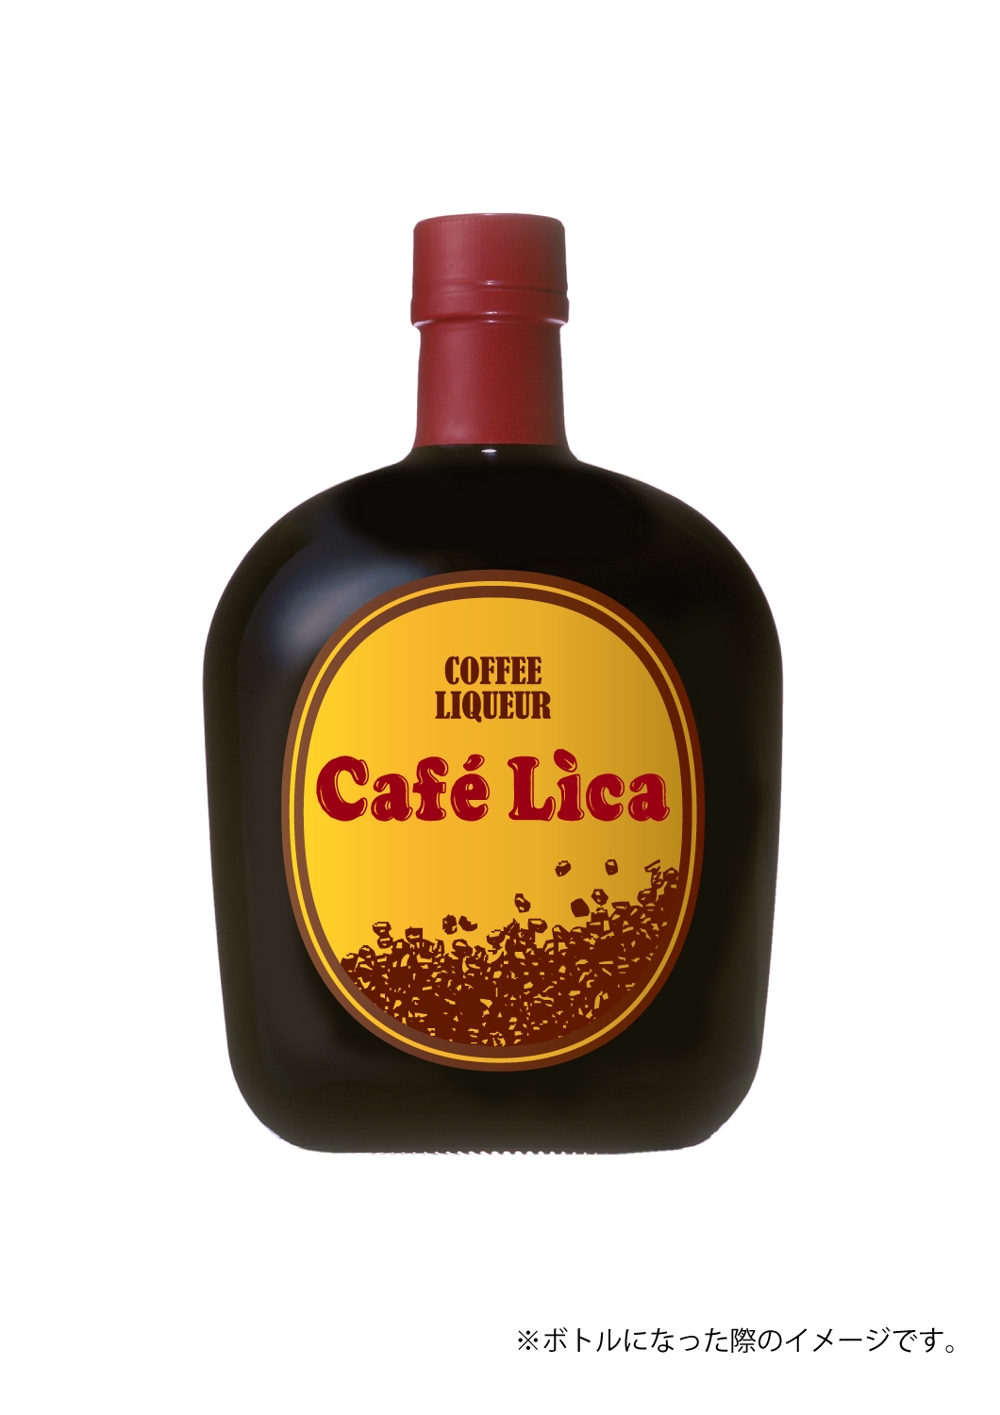 コーヒーリキュール「Café Lica」「カフェリカ」のロゴ